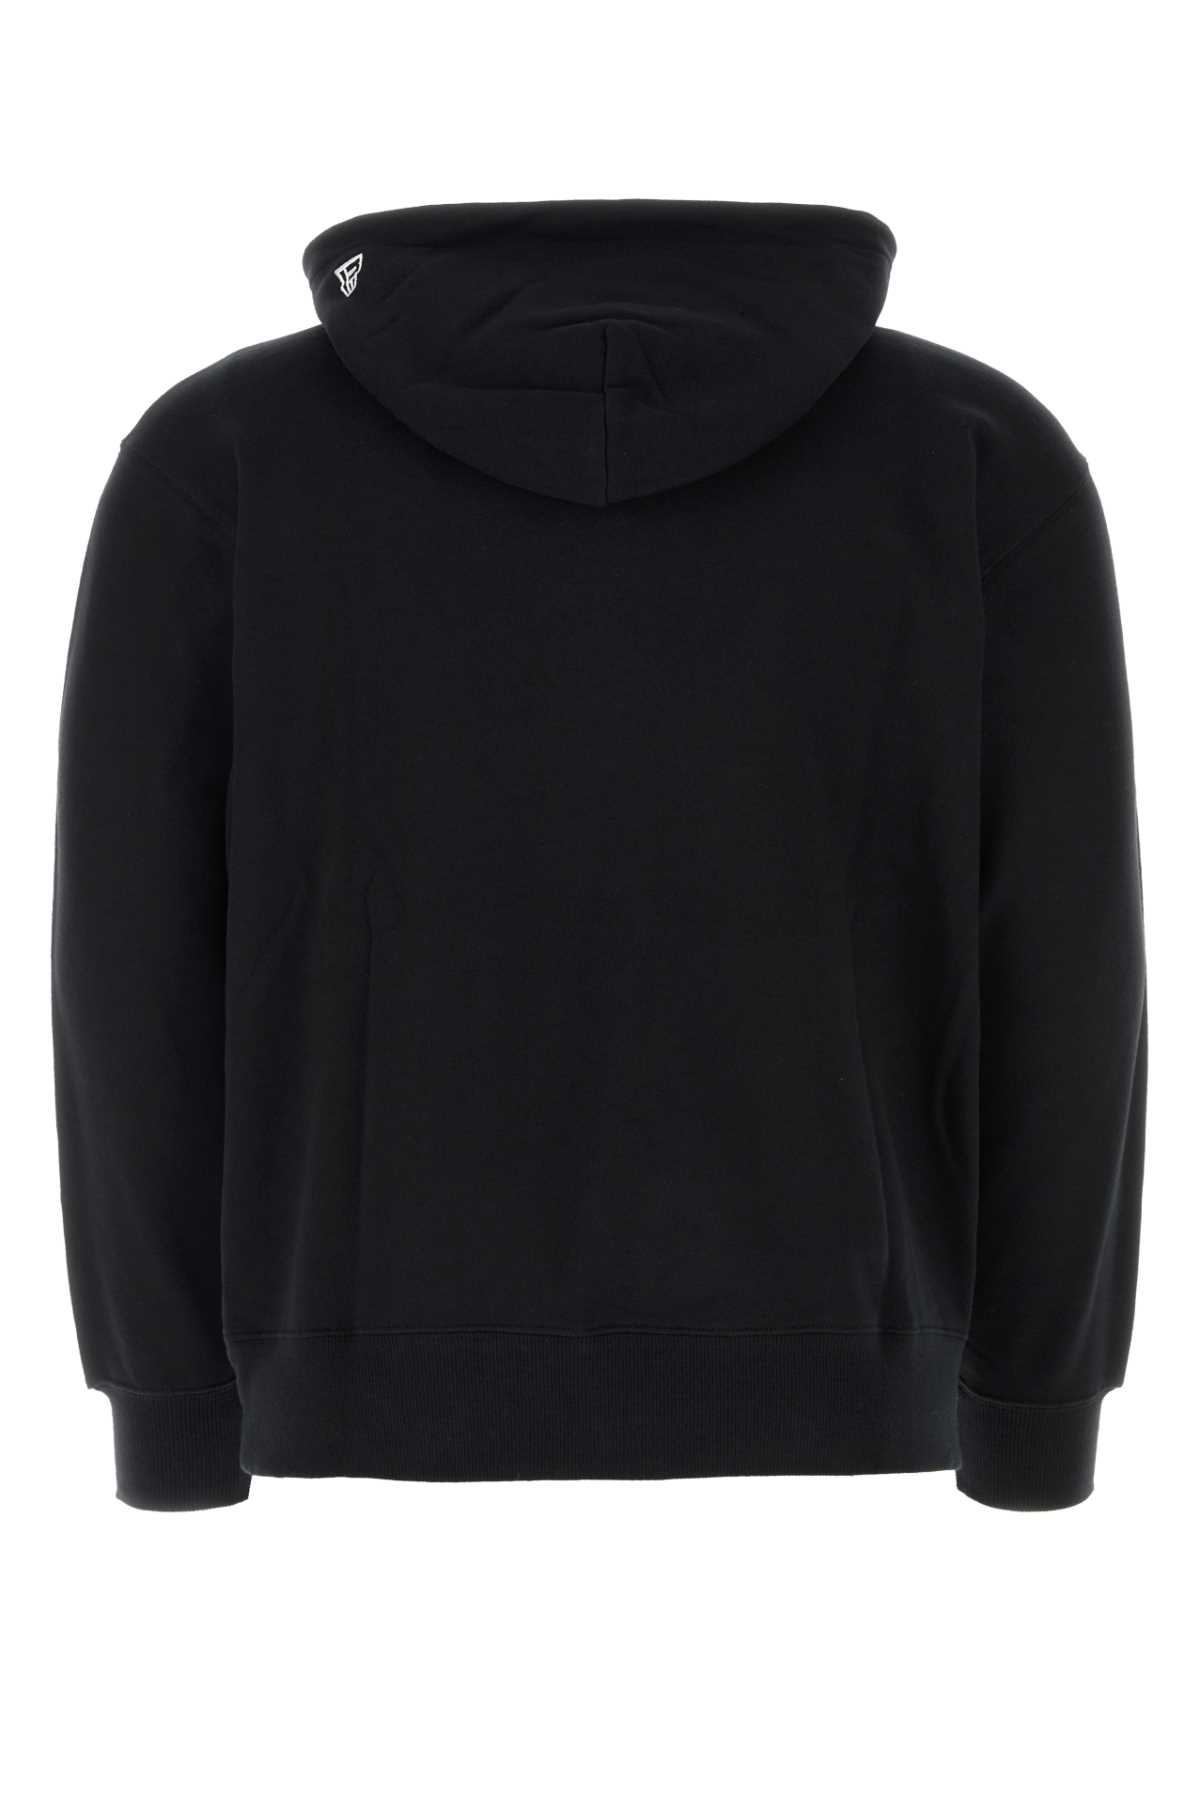 Shop Yohji Yamamoto Black Cotton Sweatshirt